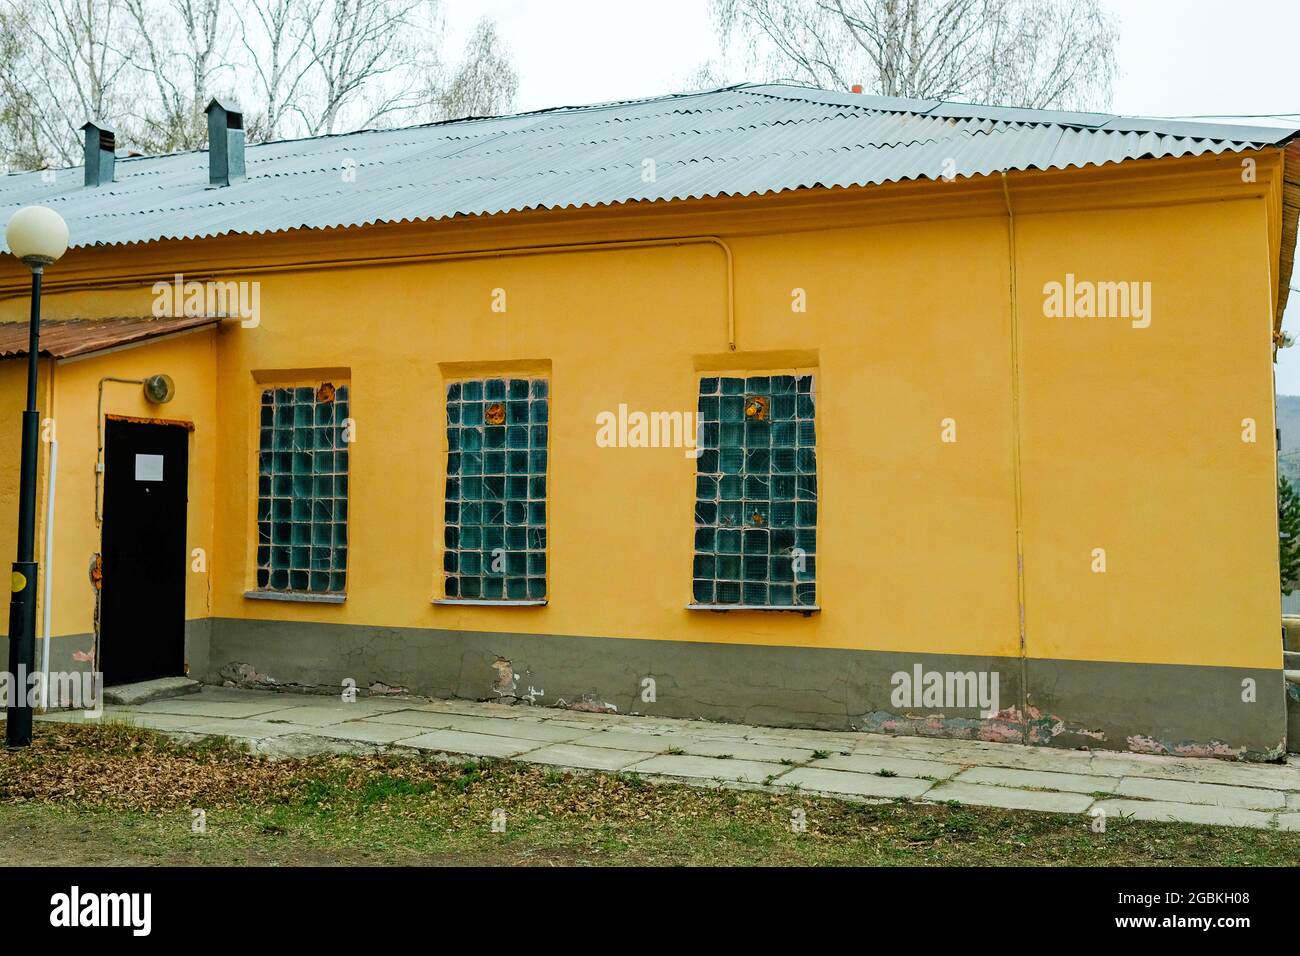 Vecchia casa di costruzione sovietica gialla. Piccole finestre opache. Nessuno. Foto Stock